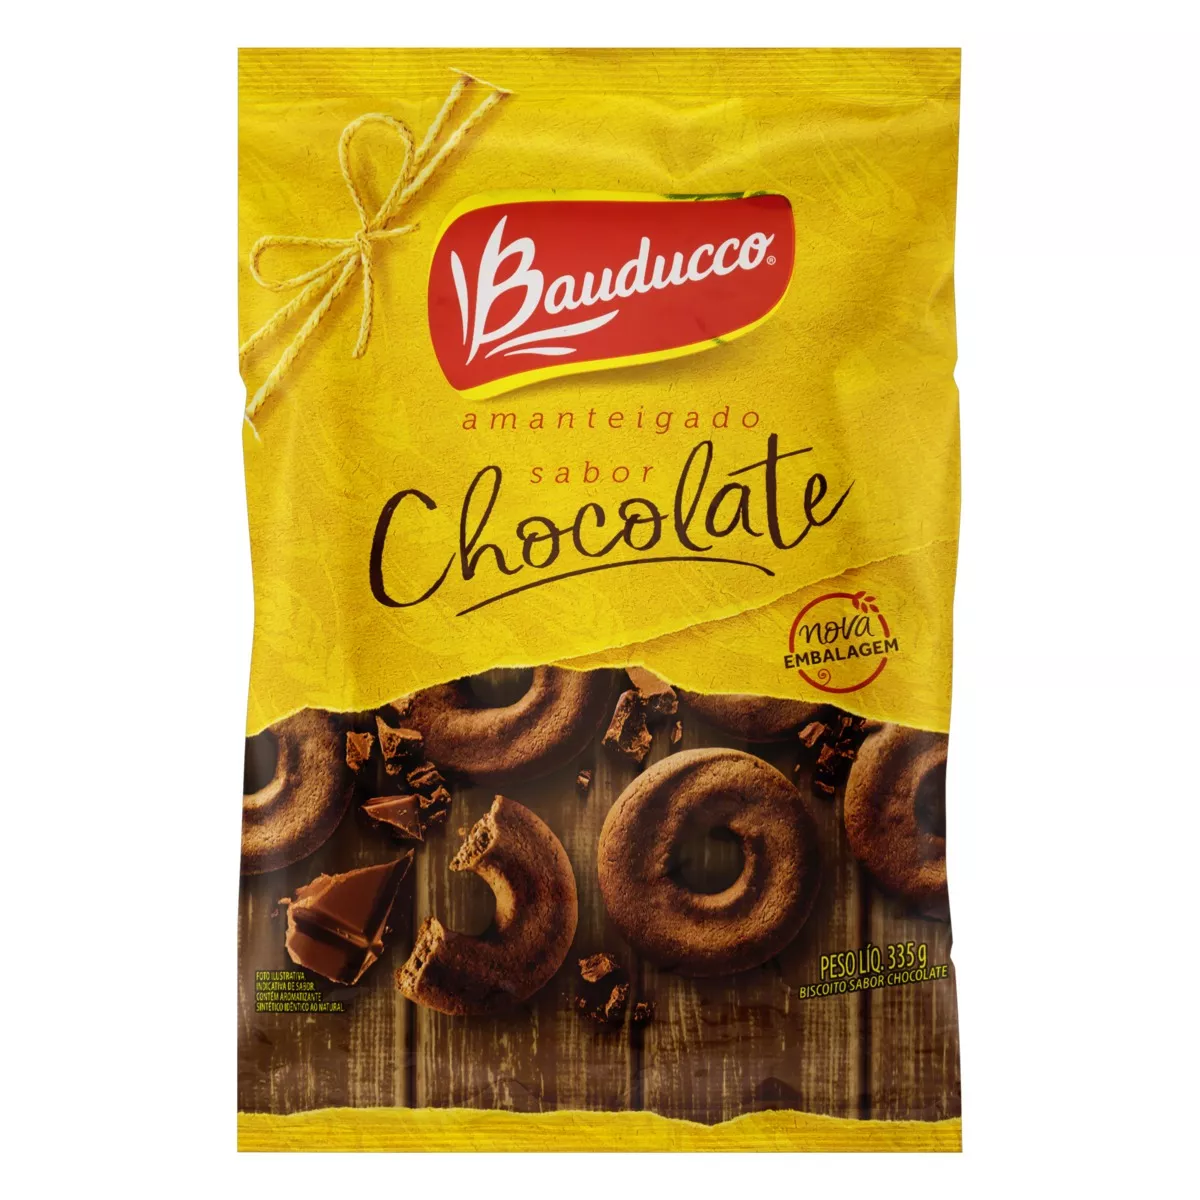 Biscoito Amanteigado Chocolate Bauducco Pacote 335g Embalagem Econômica